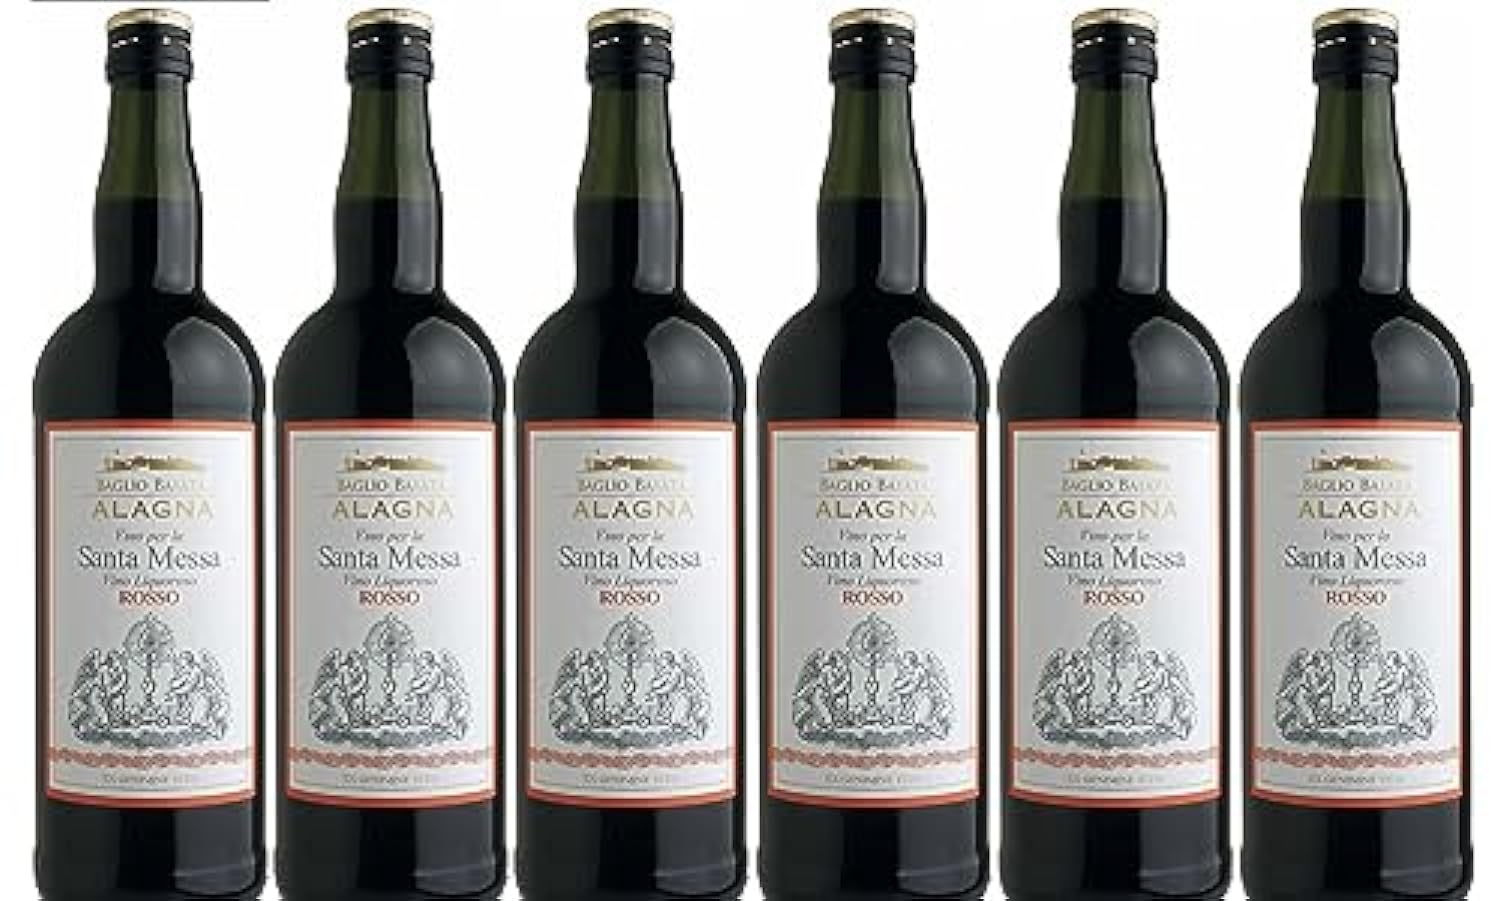 6 bottiglie di Santa Messa Rosso Alagna 578182460